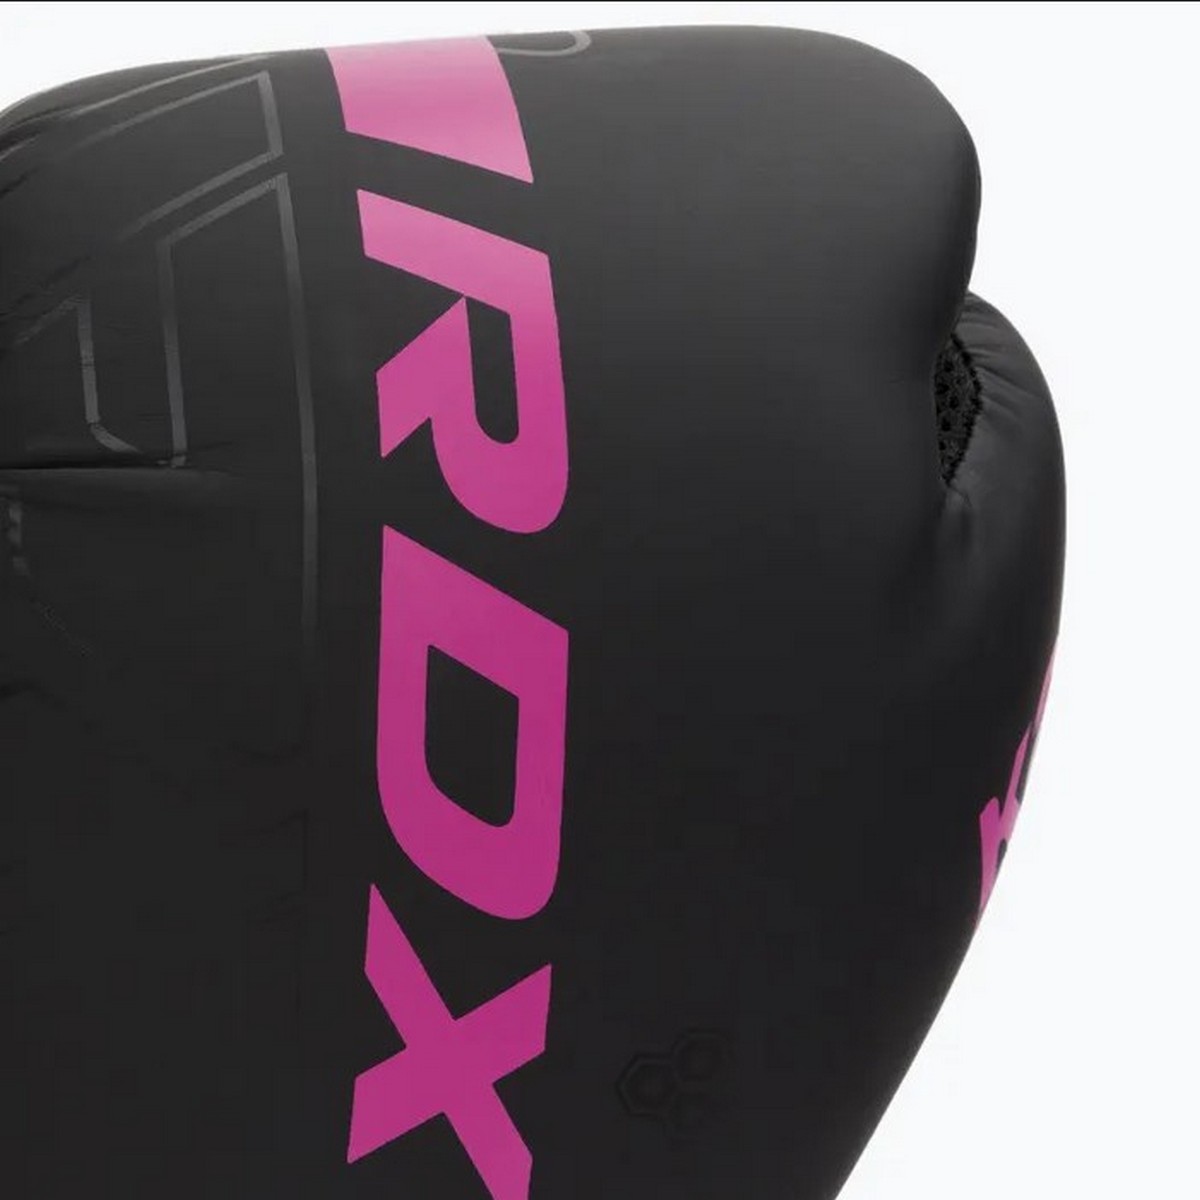 Перчатки тренировочные RDX F6 BGR-F6MP-6OZ розовый 1200_1200